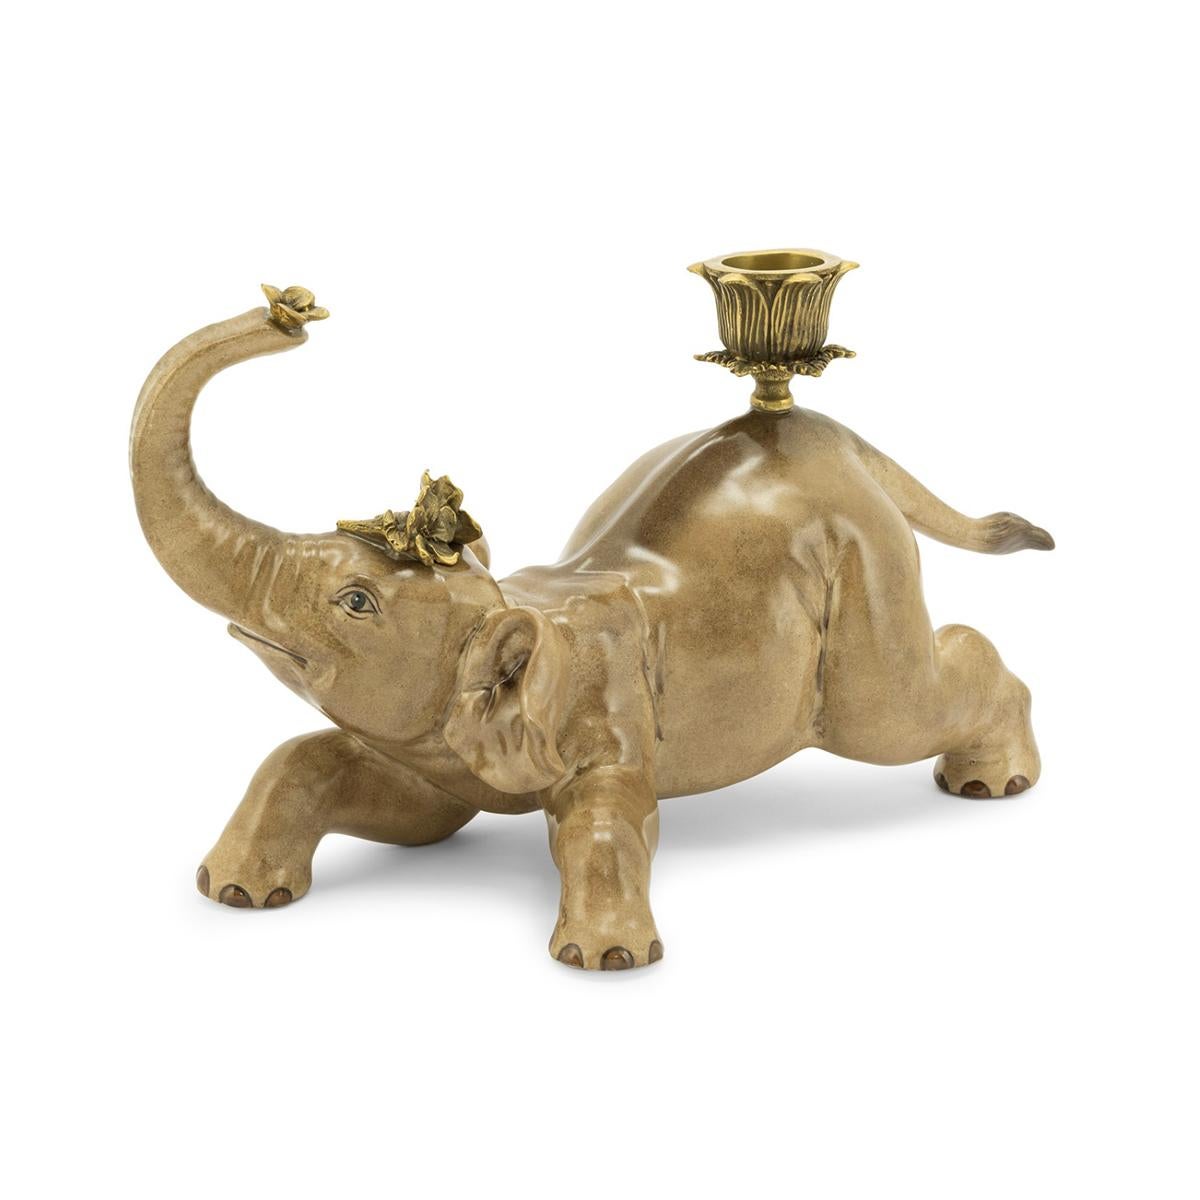 Kerzenhalter Bengalischer Elefant 2er Set,
aus handbemaltem Porzellan in Bronzeoptik.
Jeweils mit Kerzenhalter aus Messing.
Maße: L 28 x T 13 x H 17cm, jeweils.